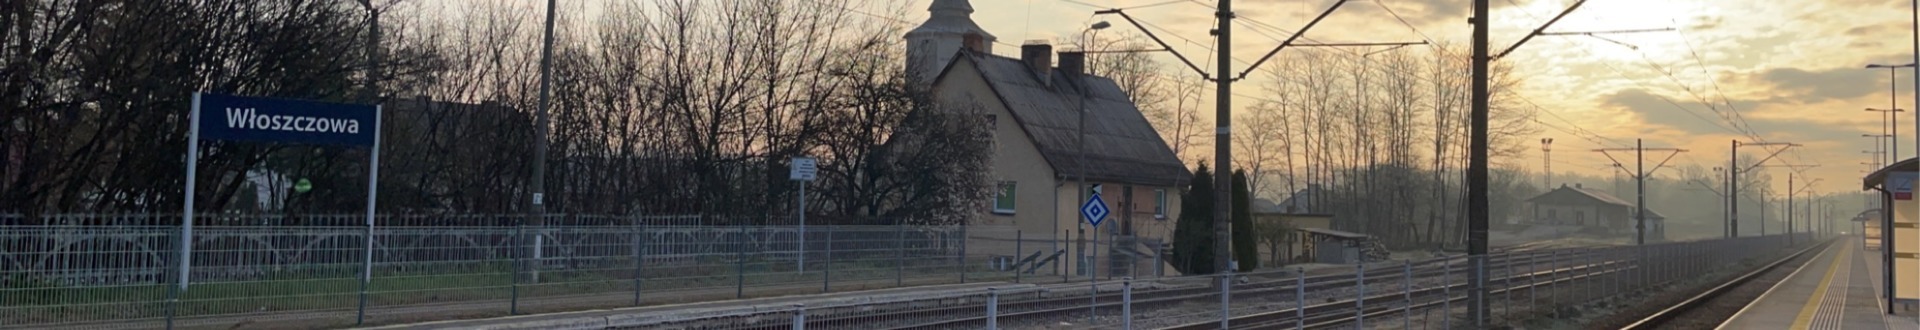 dworzec_wloszczowa